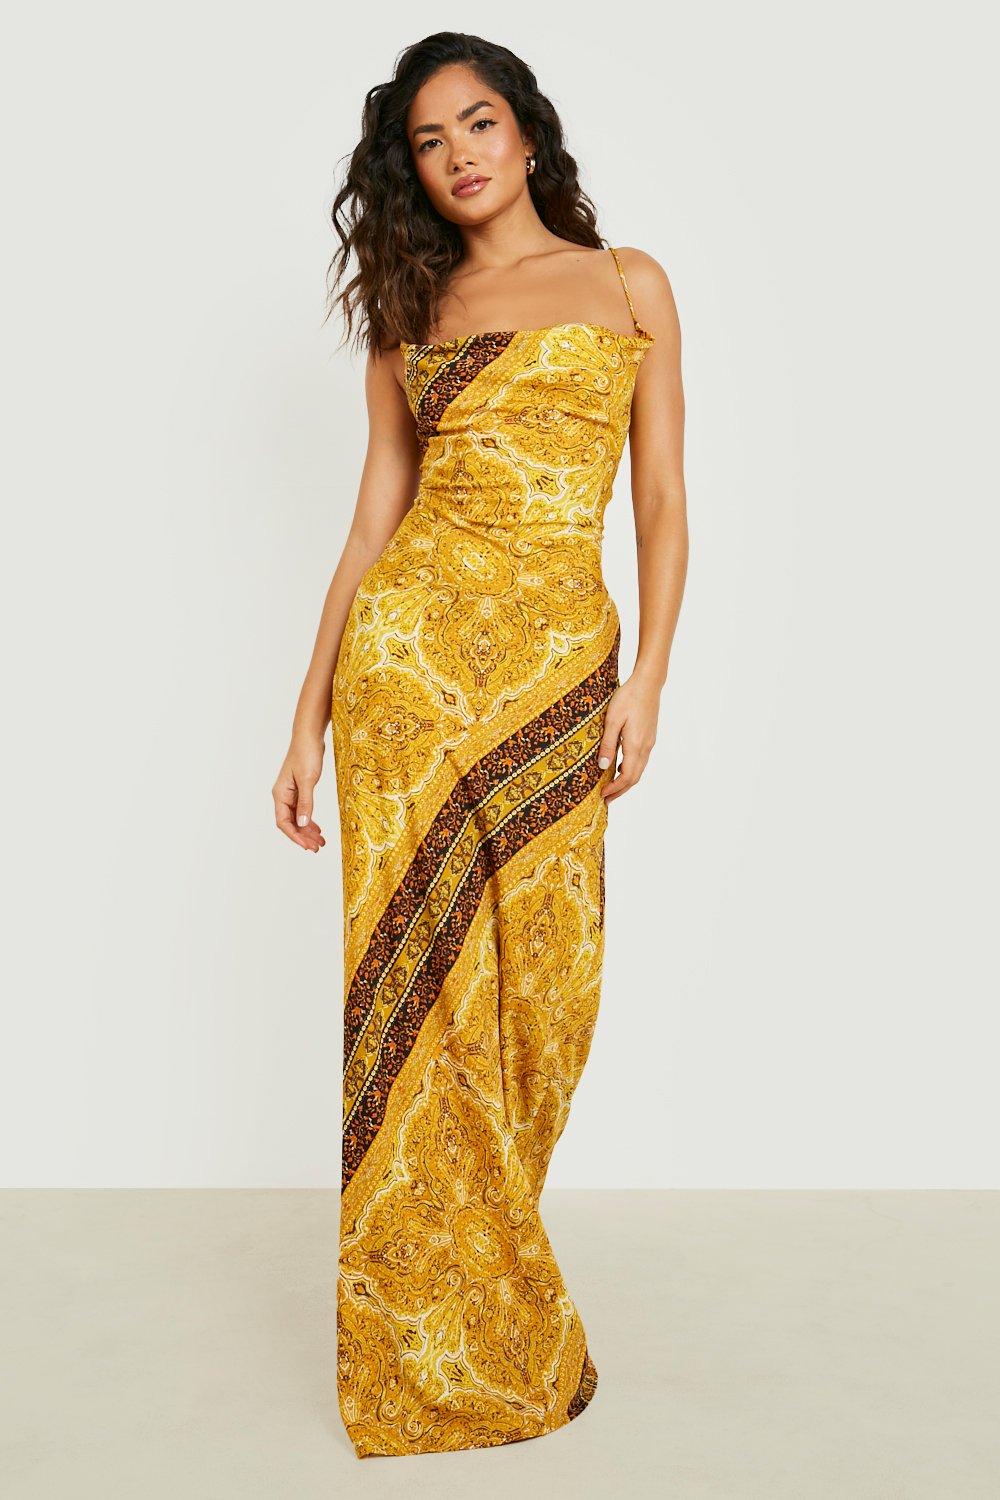 Slip-Kleid Mit Wasserfallausschnitt Und Paisley-Print - Mustard - 42, Mustard